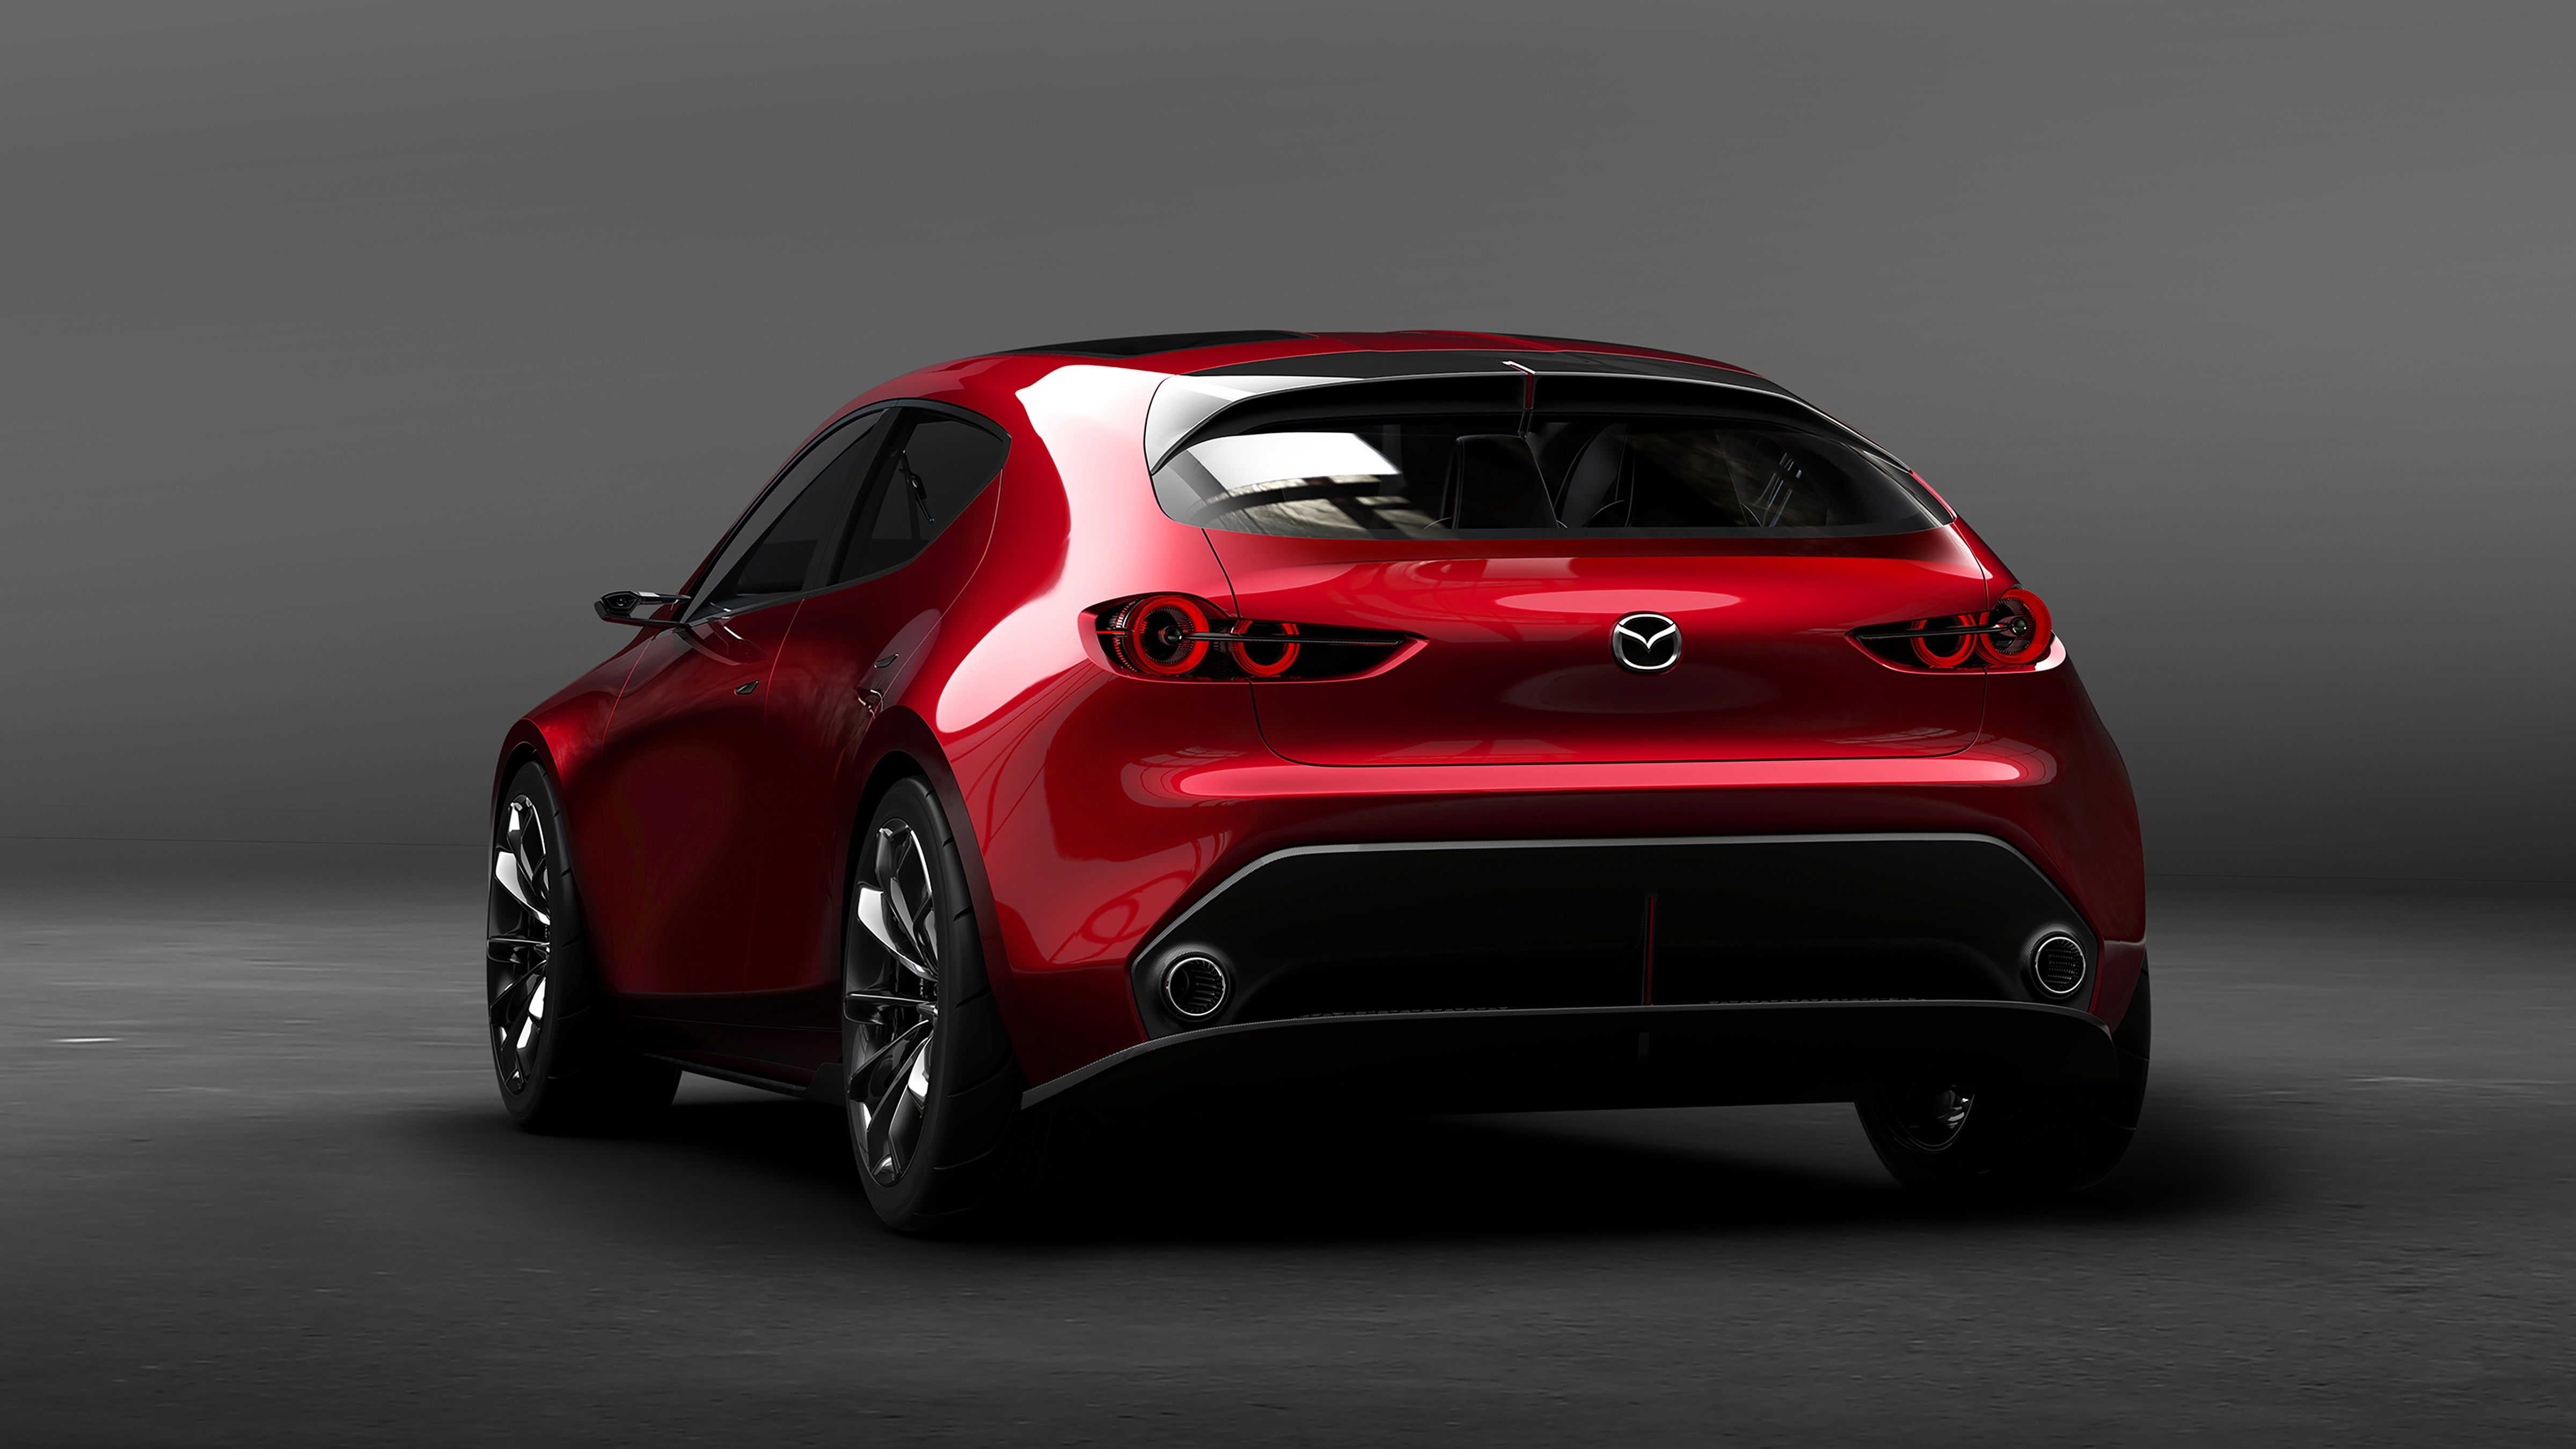 Mazda KAI Concept design, powertrain, and featrures.